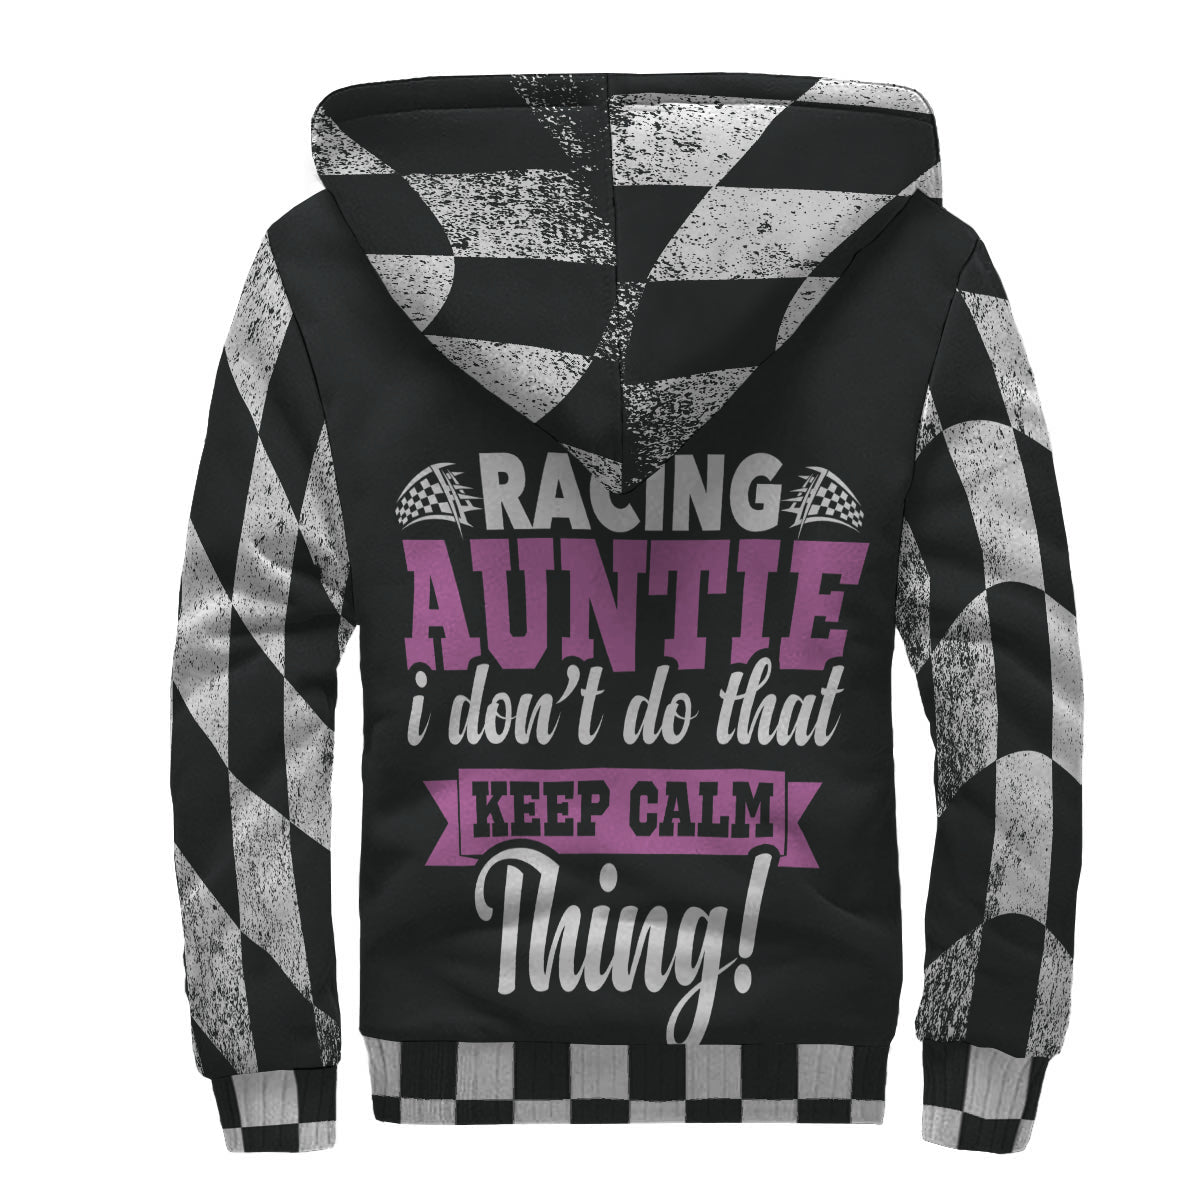 racing aunt jacket